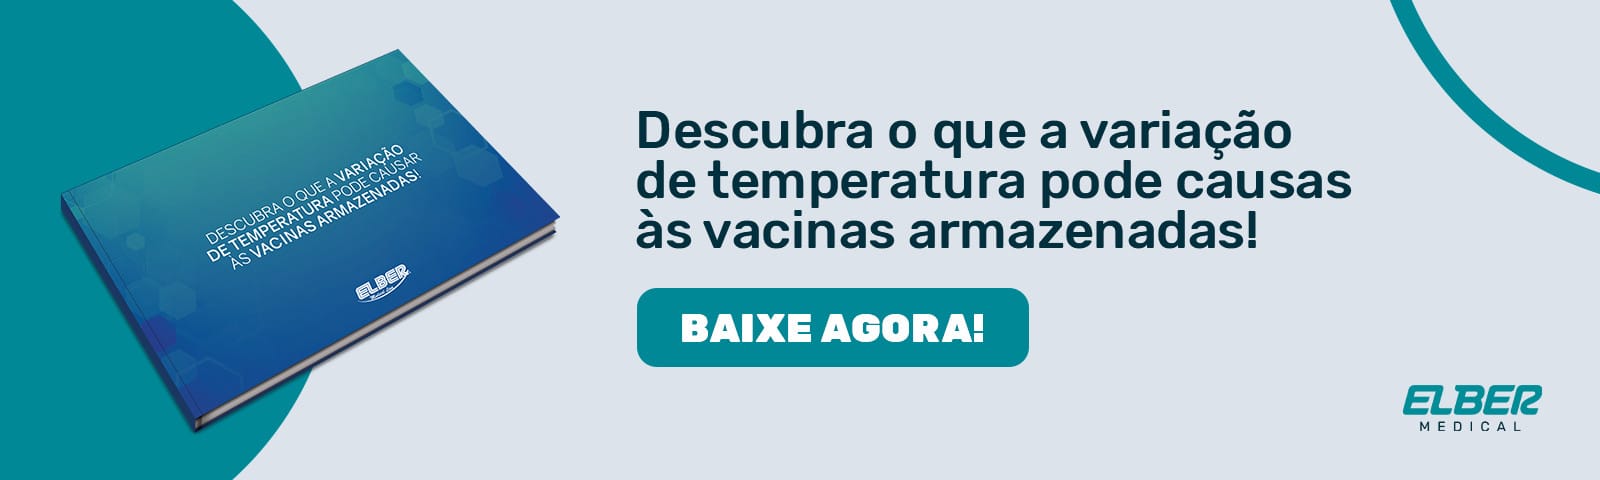 Banner para baixar e-book sobre o que a variação de temperatura pode causar às vacinas armazenadas